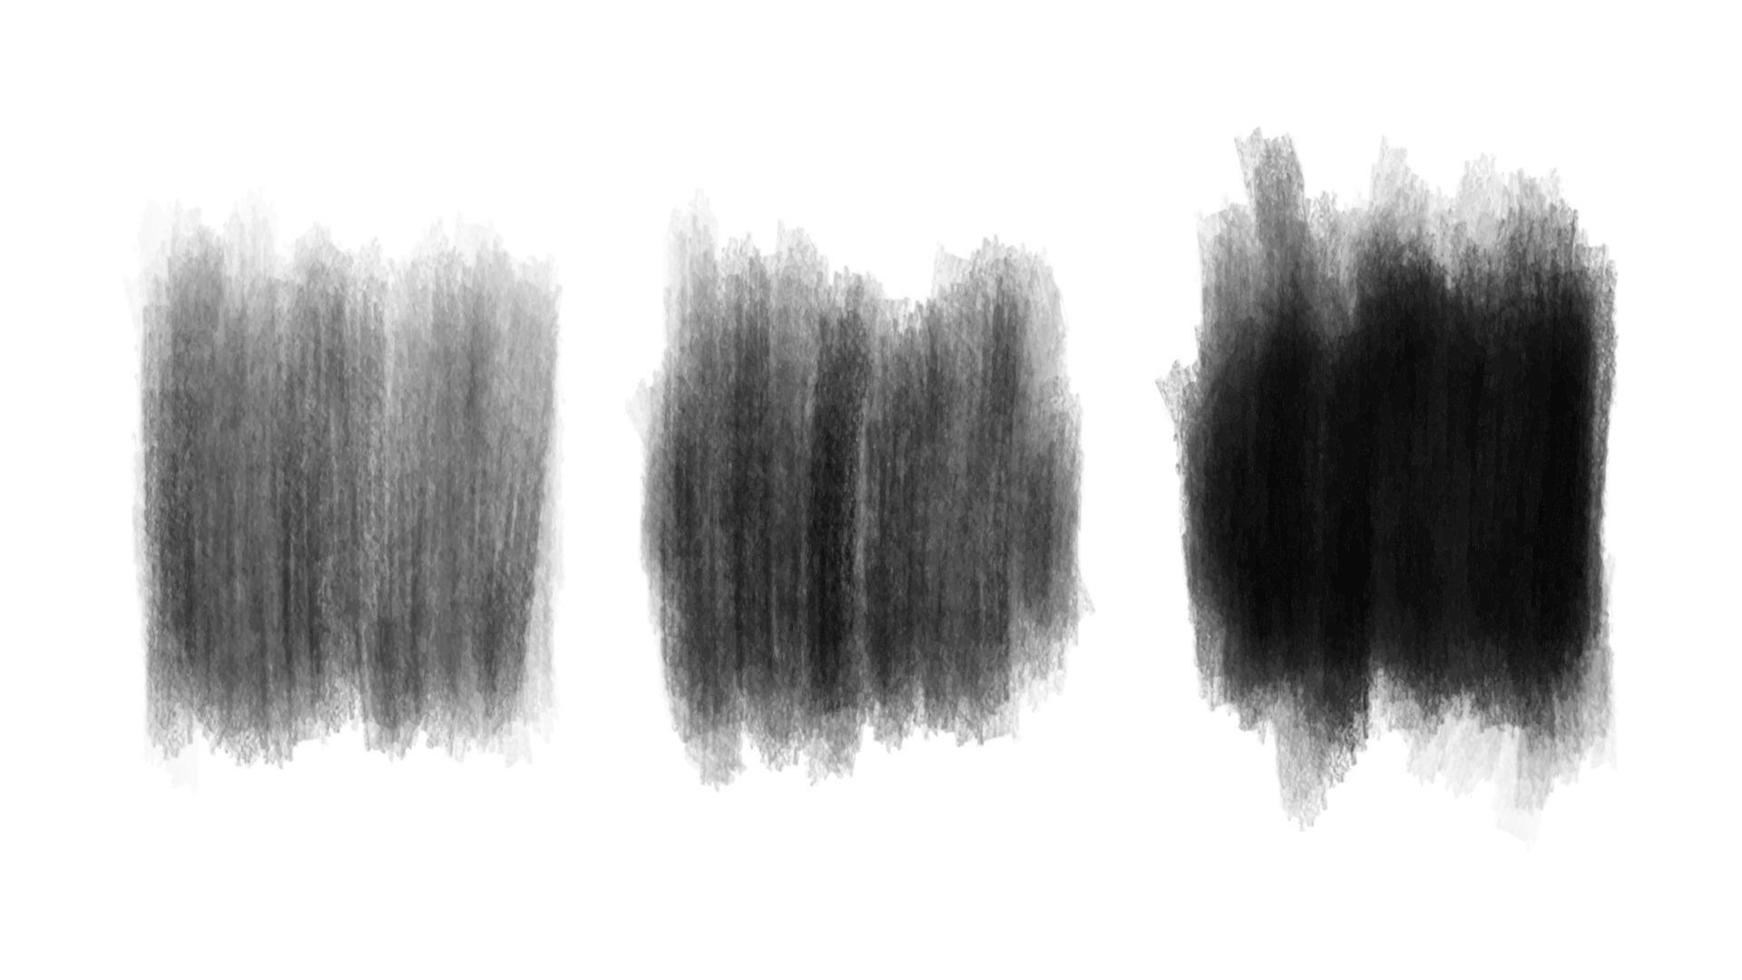 uppsättning av vattenfärg grunge borsta textur. abstrakt svartvit grunge stroke vektor